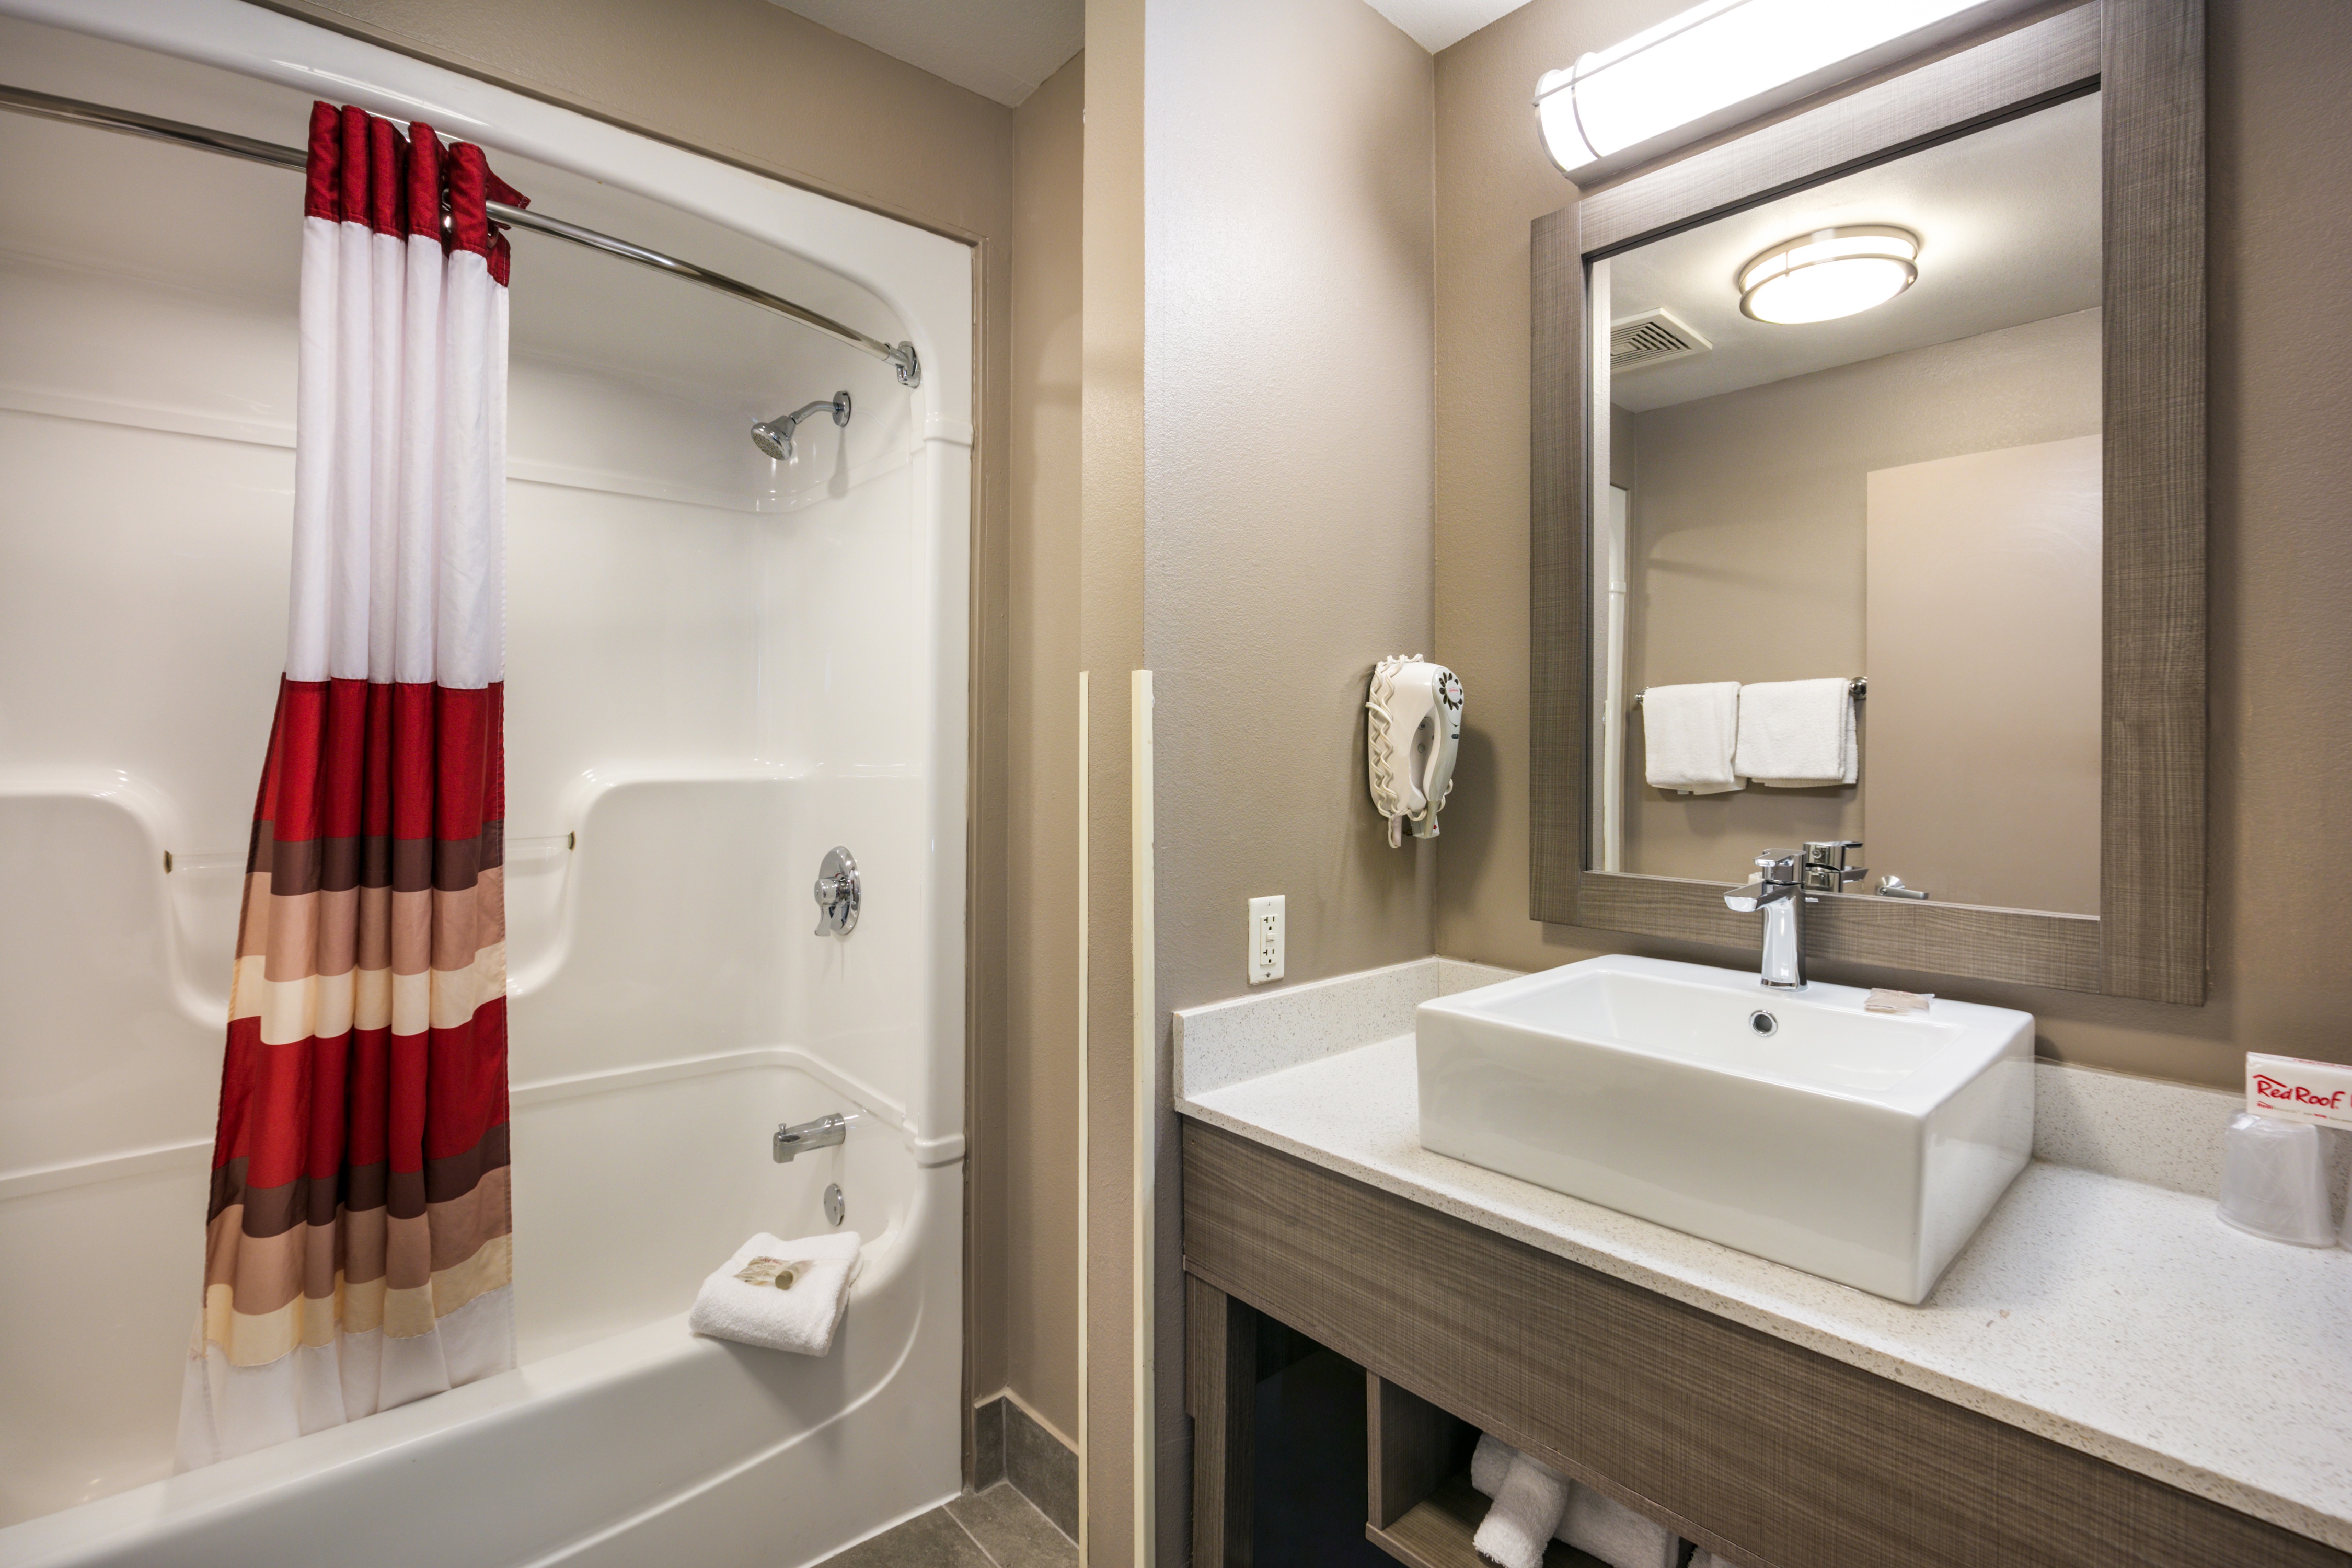 305-2-room-suite-vanity-bath.jpg